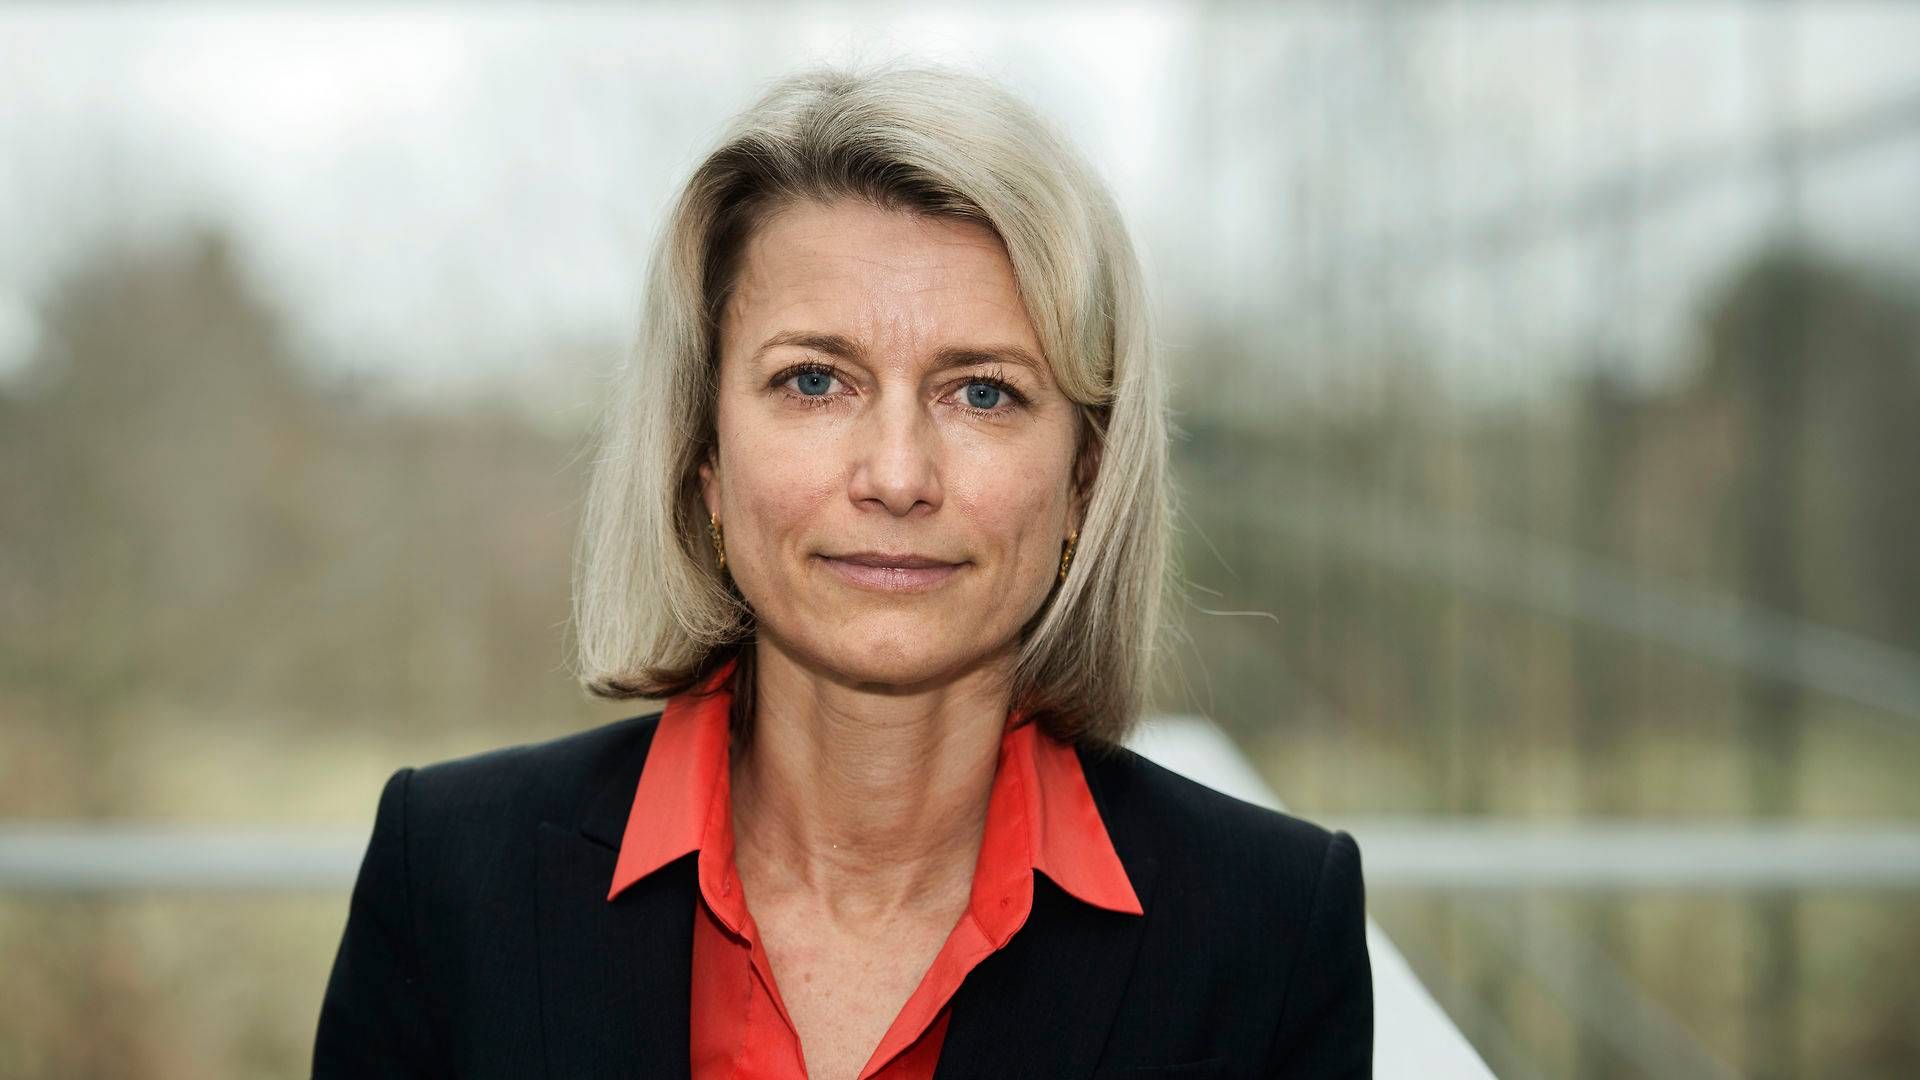 Eva Berneke er fra 1. januar adm. direktør for satellitoperatøren Eutelstat. | Foto: Kenneth Lysbjerg Koustrup/Jyllands-Posten/Ritzau Scanpix